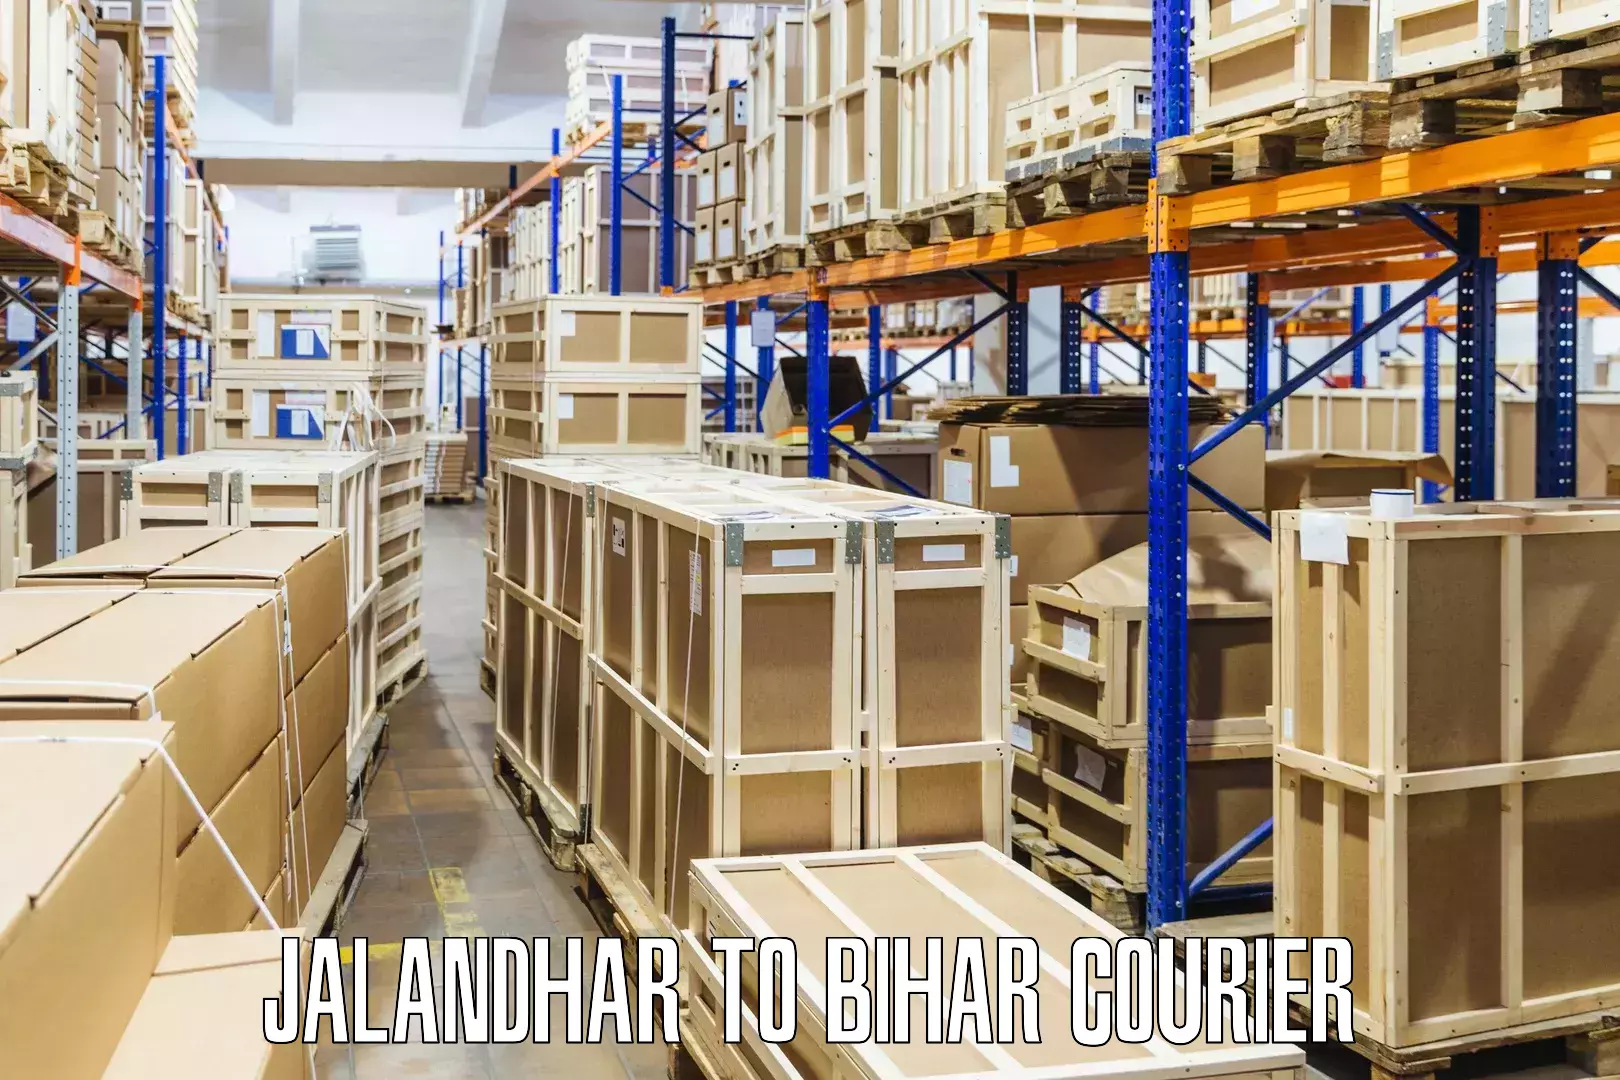 Multi-national courier services Jalandhar to Alamnagar